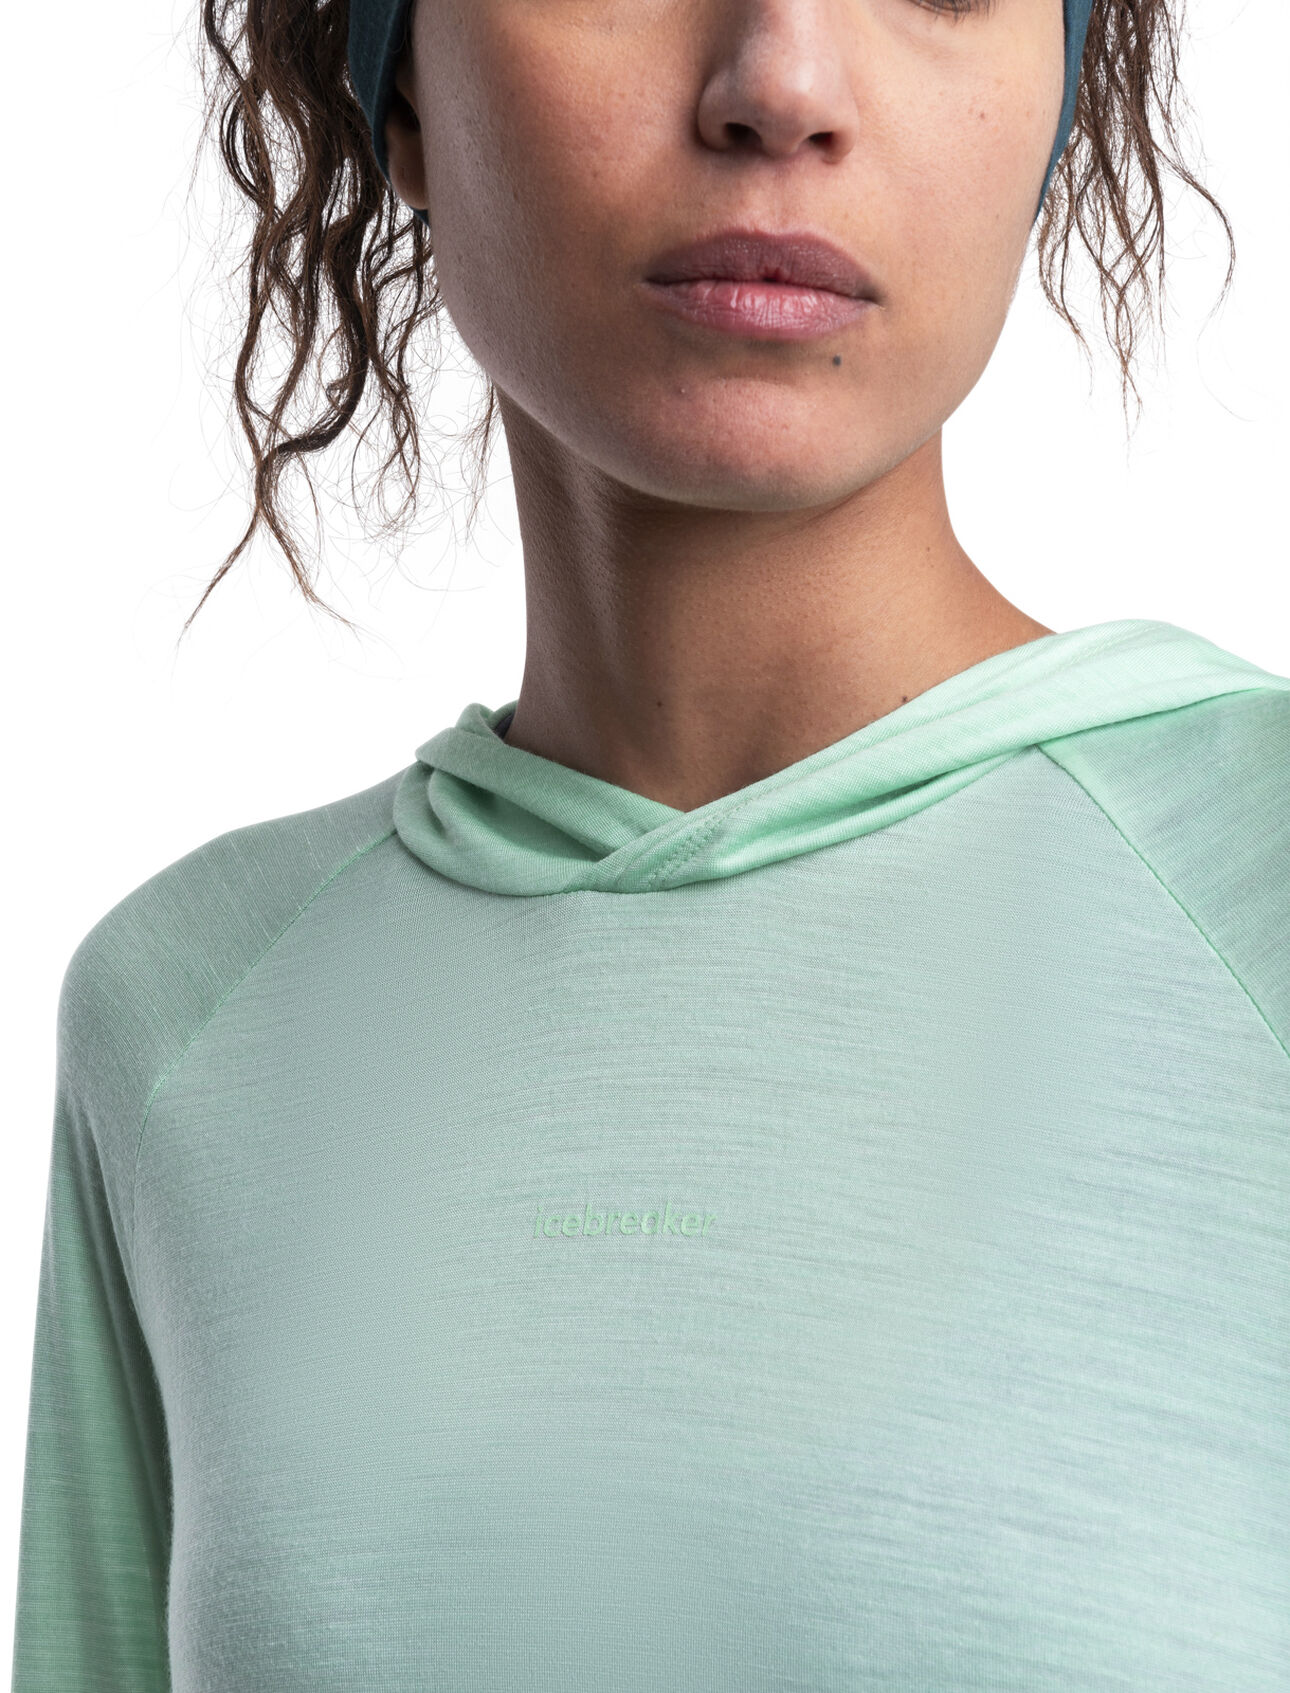 Shift Cut Out Long Sleeve Yoga T-shirt | Women's Sports T-shirt